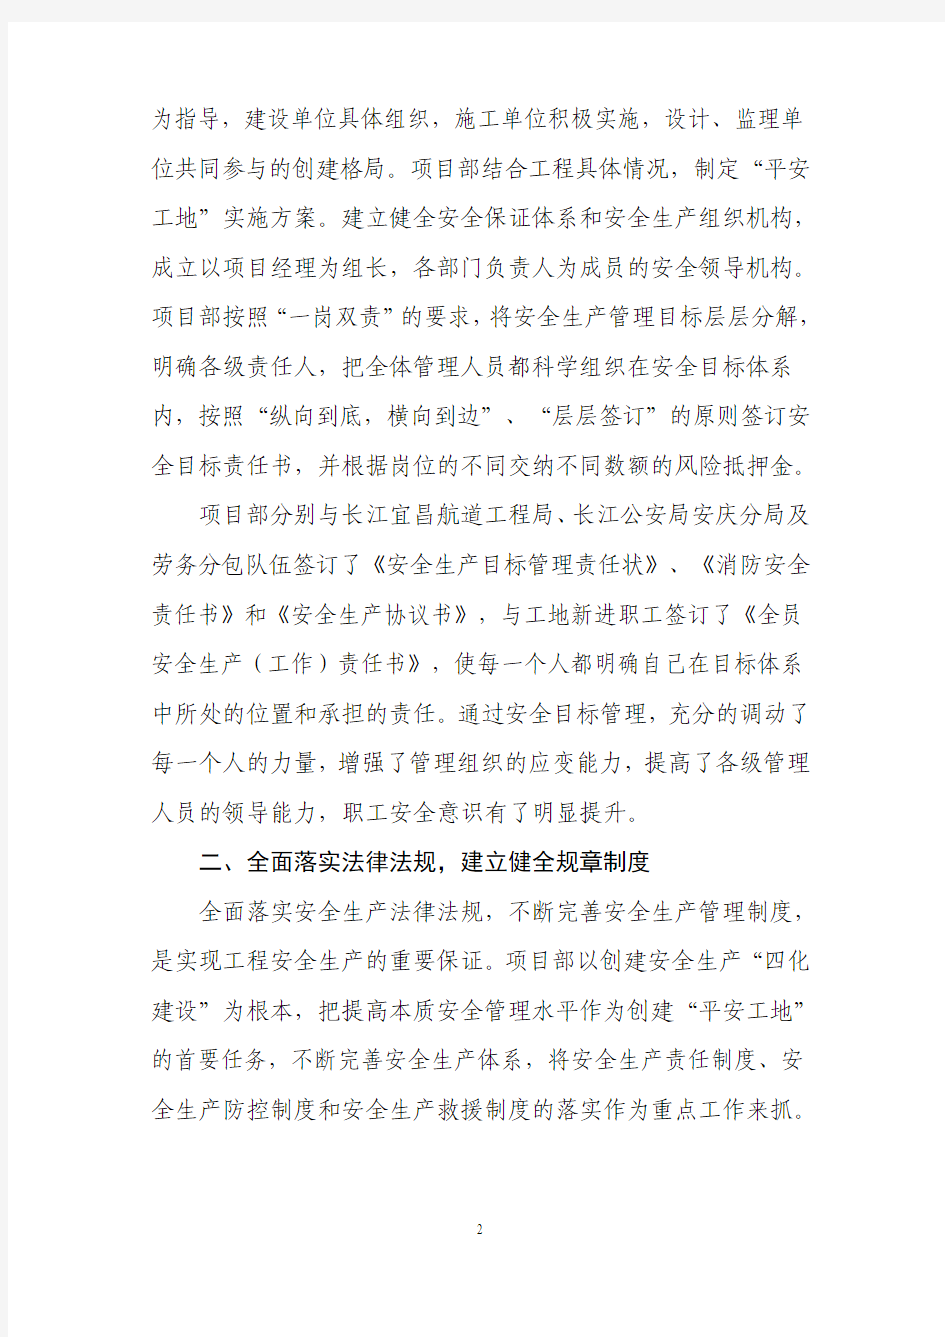 长江宜昌航道工程局创建平安工地活动交流材料